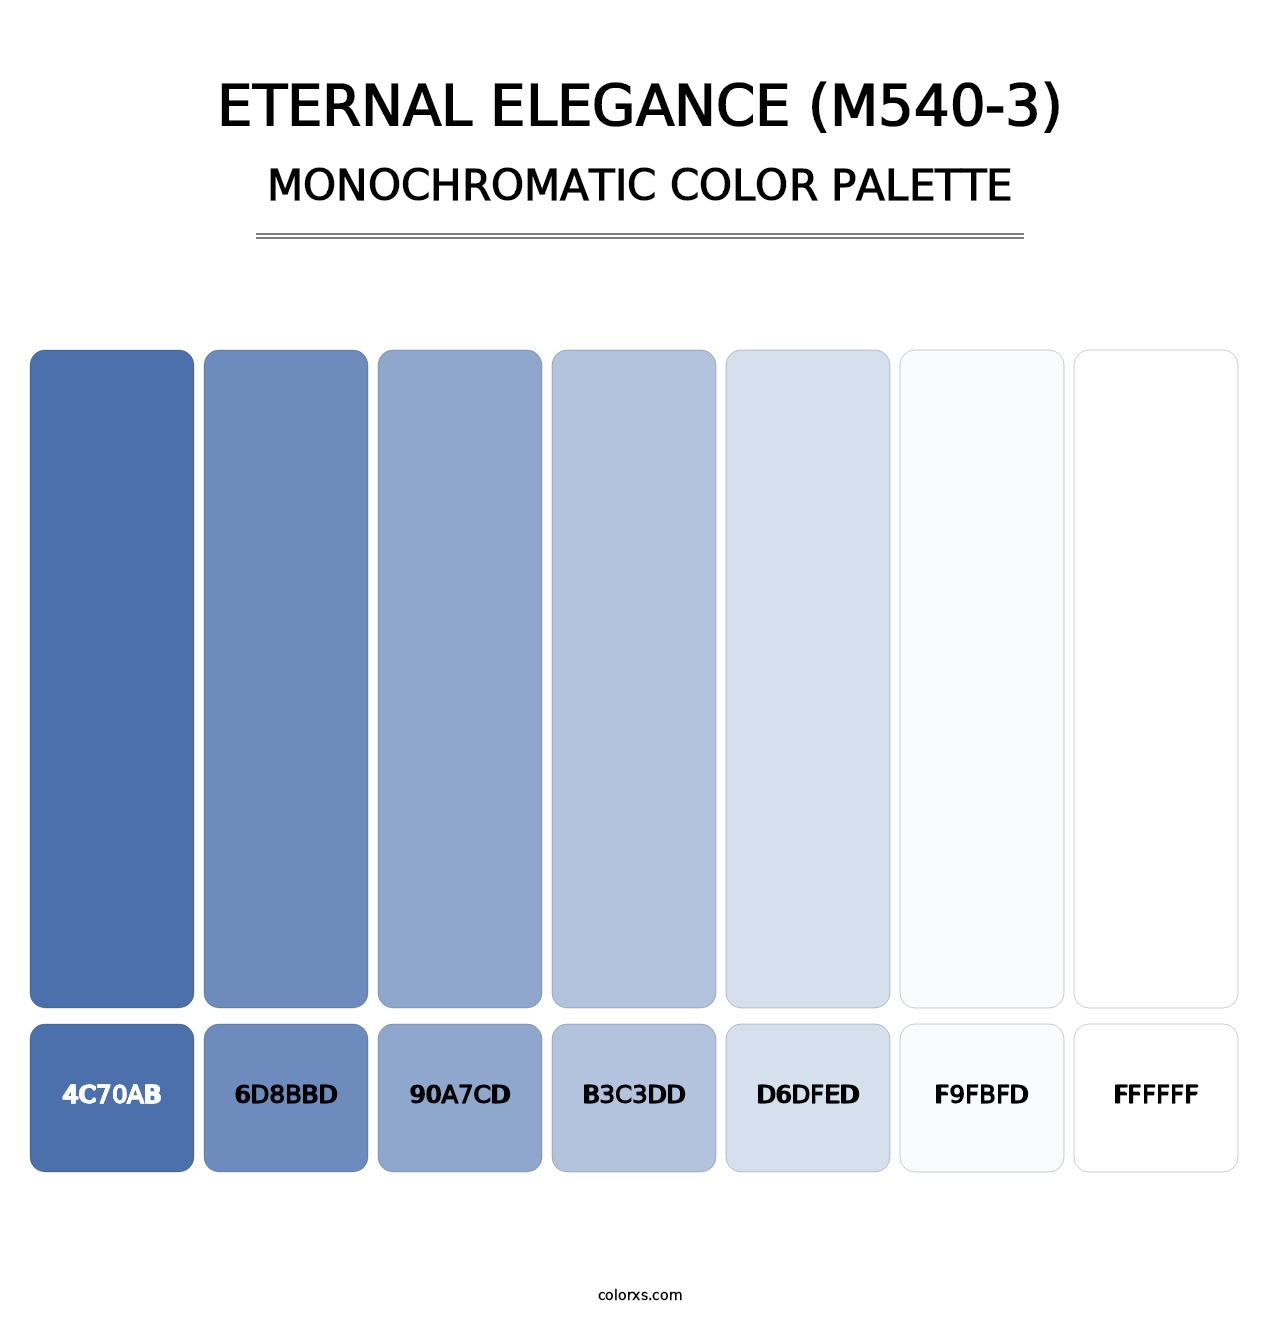 Eternal Elegance (M540-3) - Monochromatic Color Palette